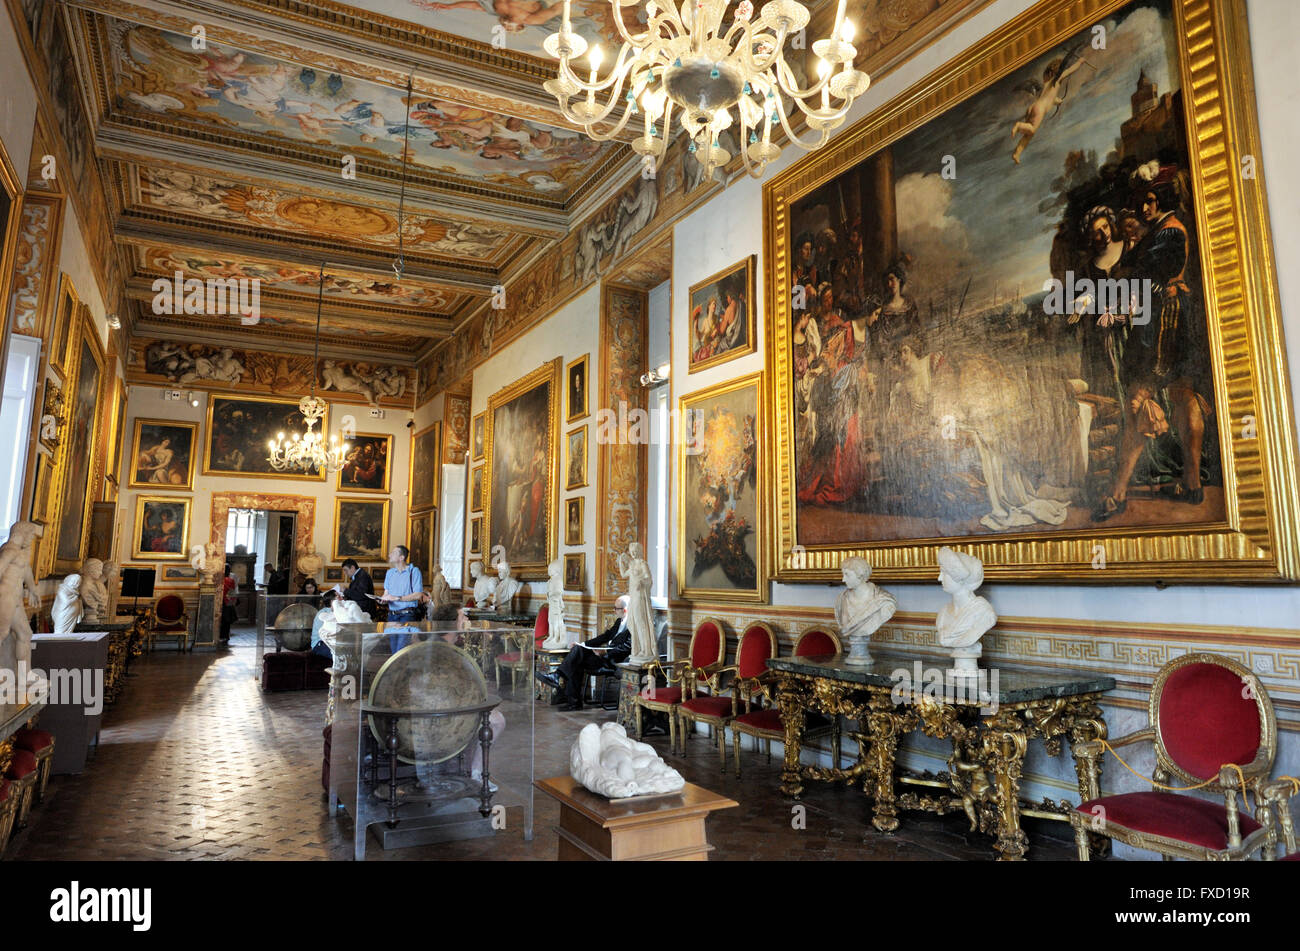 Italia, Roma, palazzo spada, la Galleria Spada interior galería de arte Foto de stock